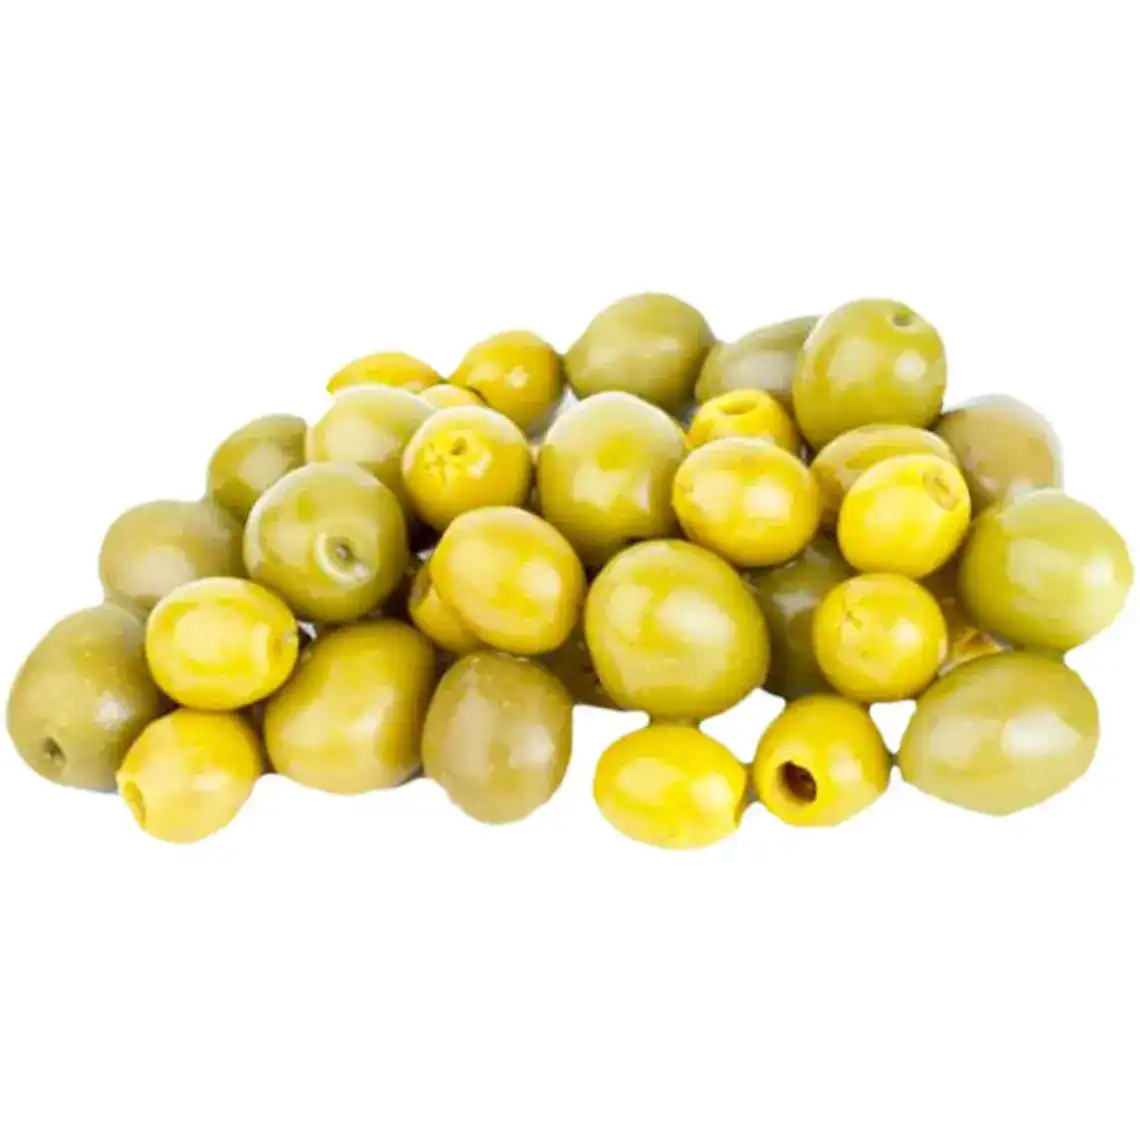 Оливки з кiсточкою зеленi Грецiя